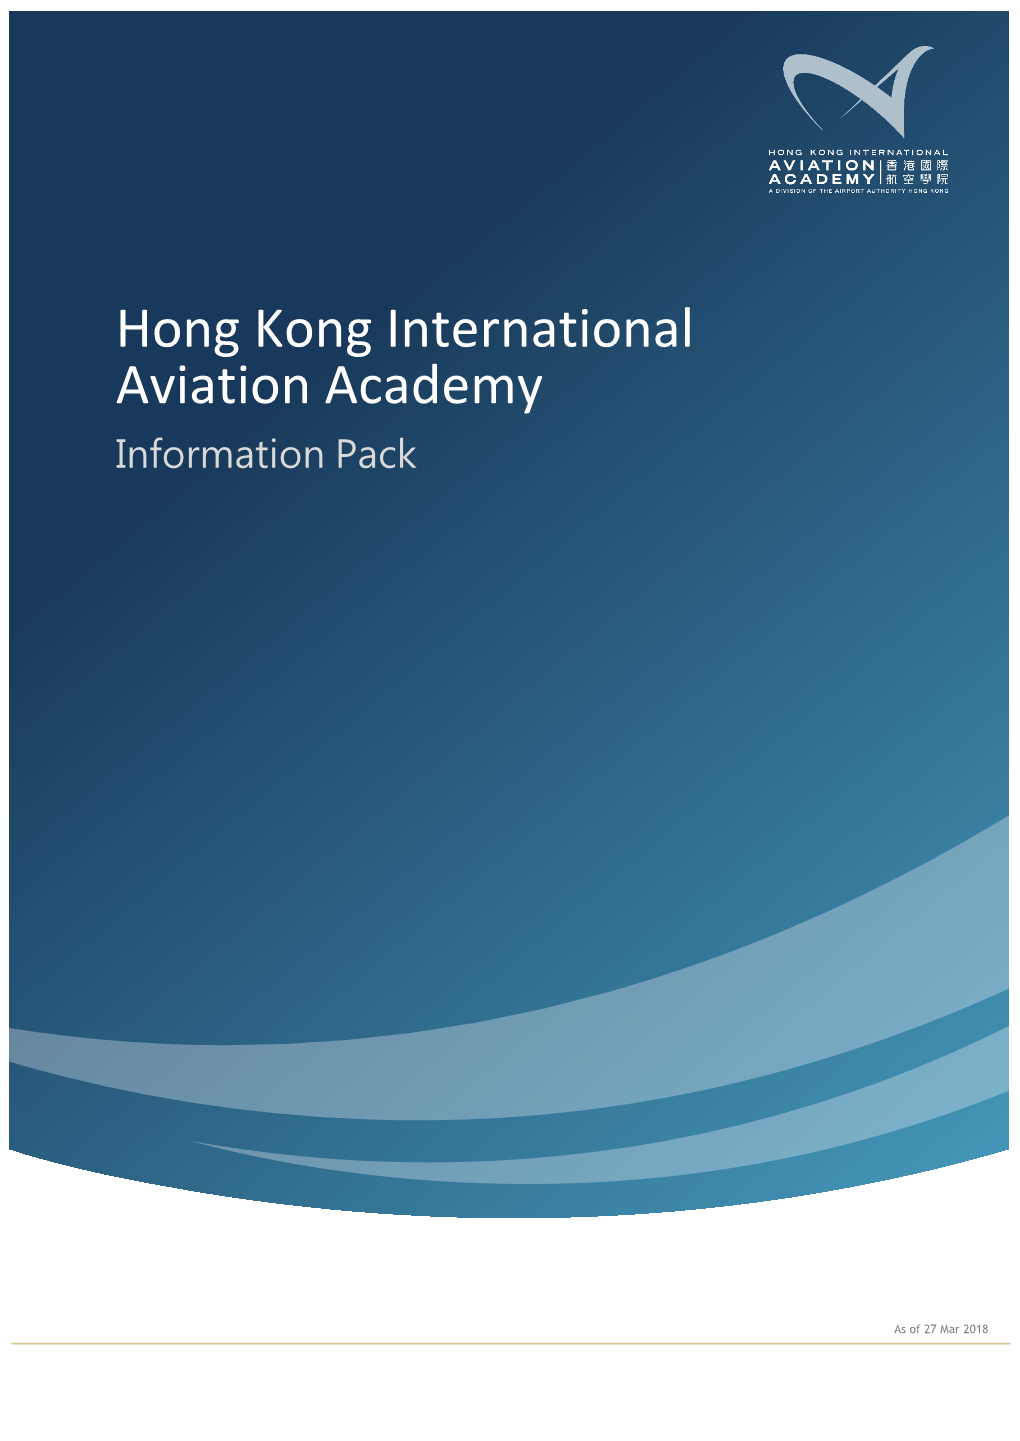 Hong Kong International Aviation Academy Information Pack